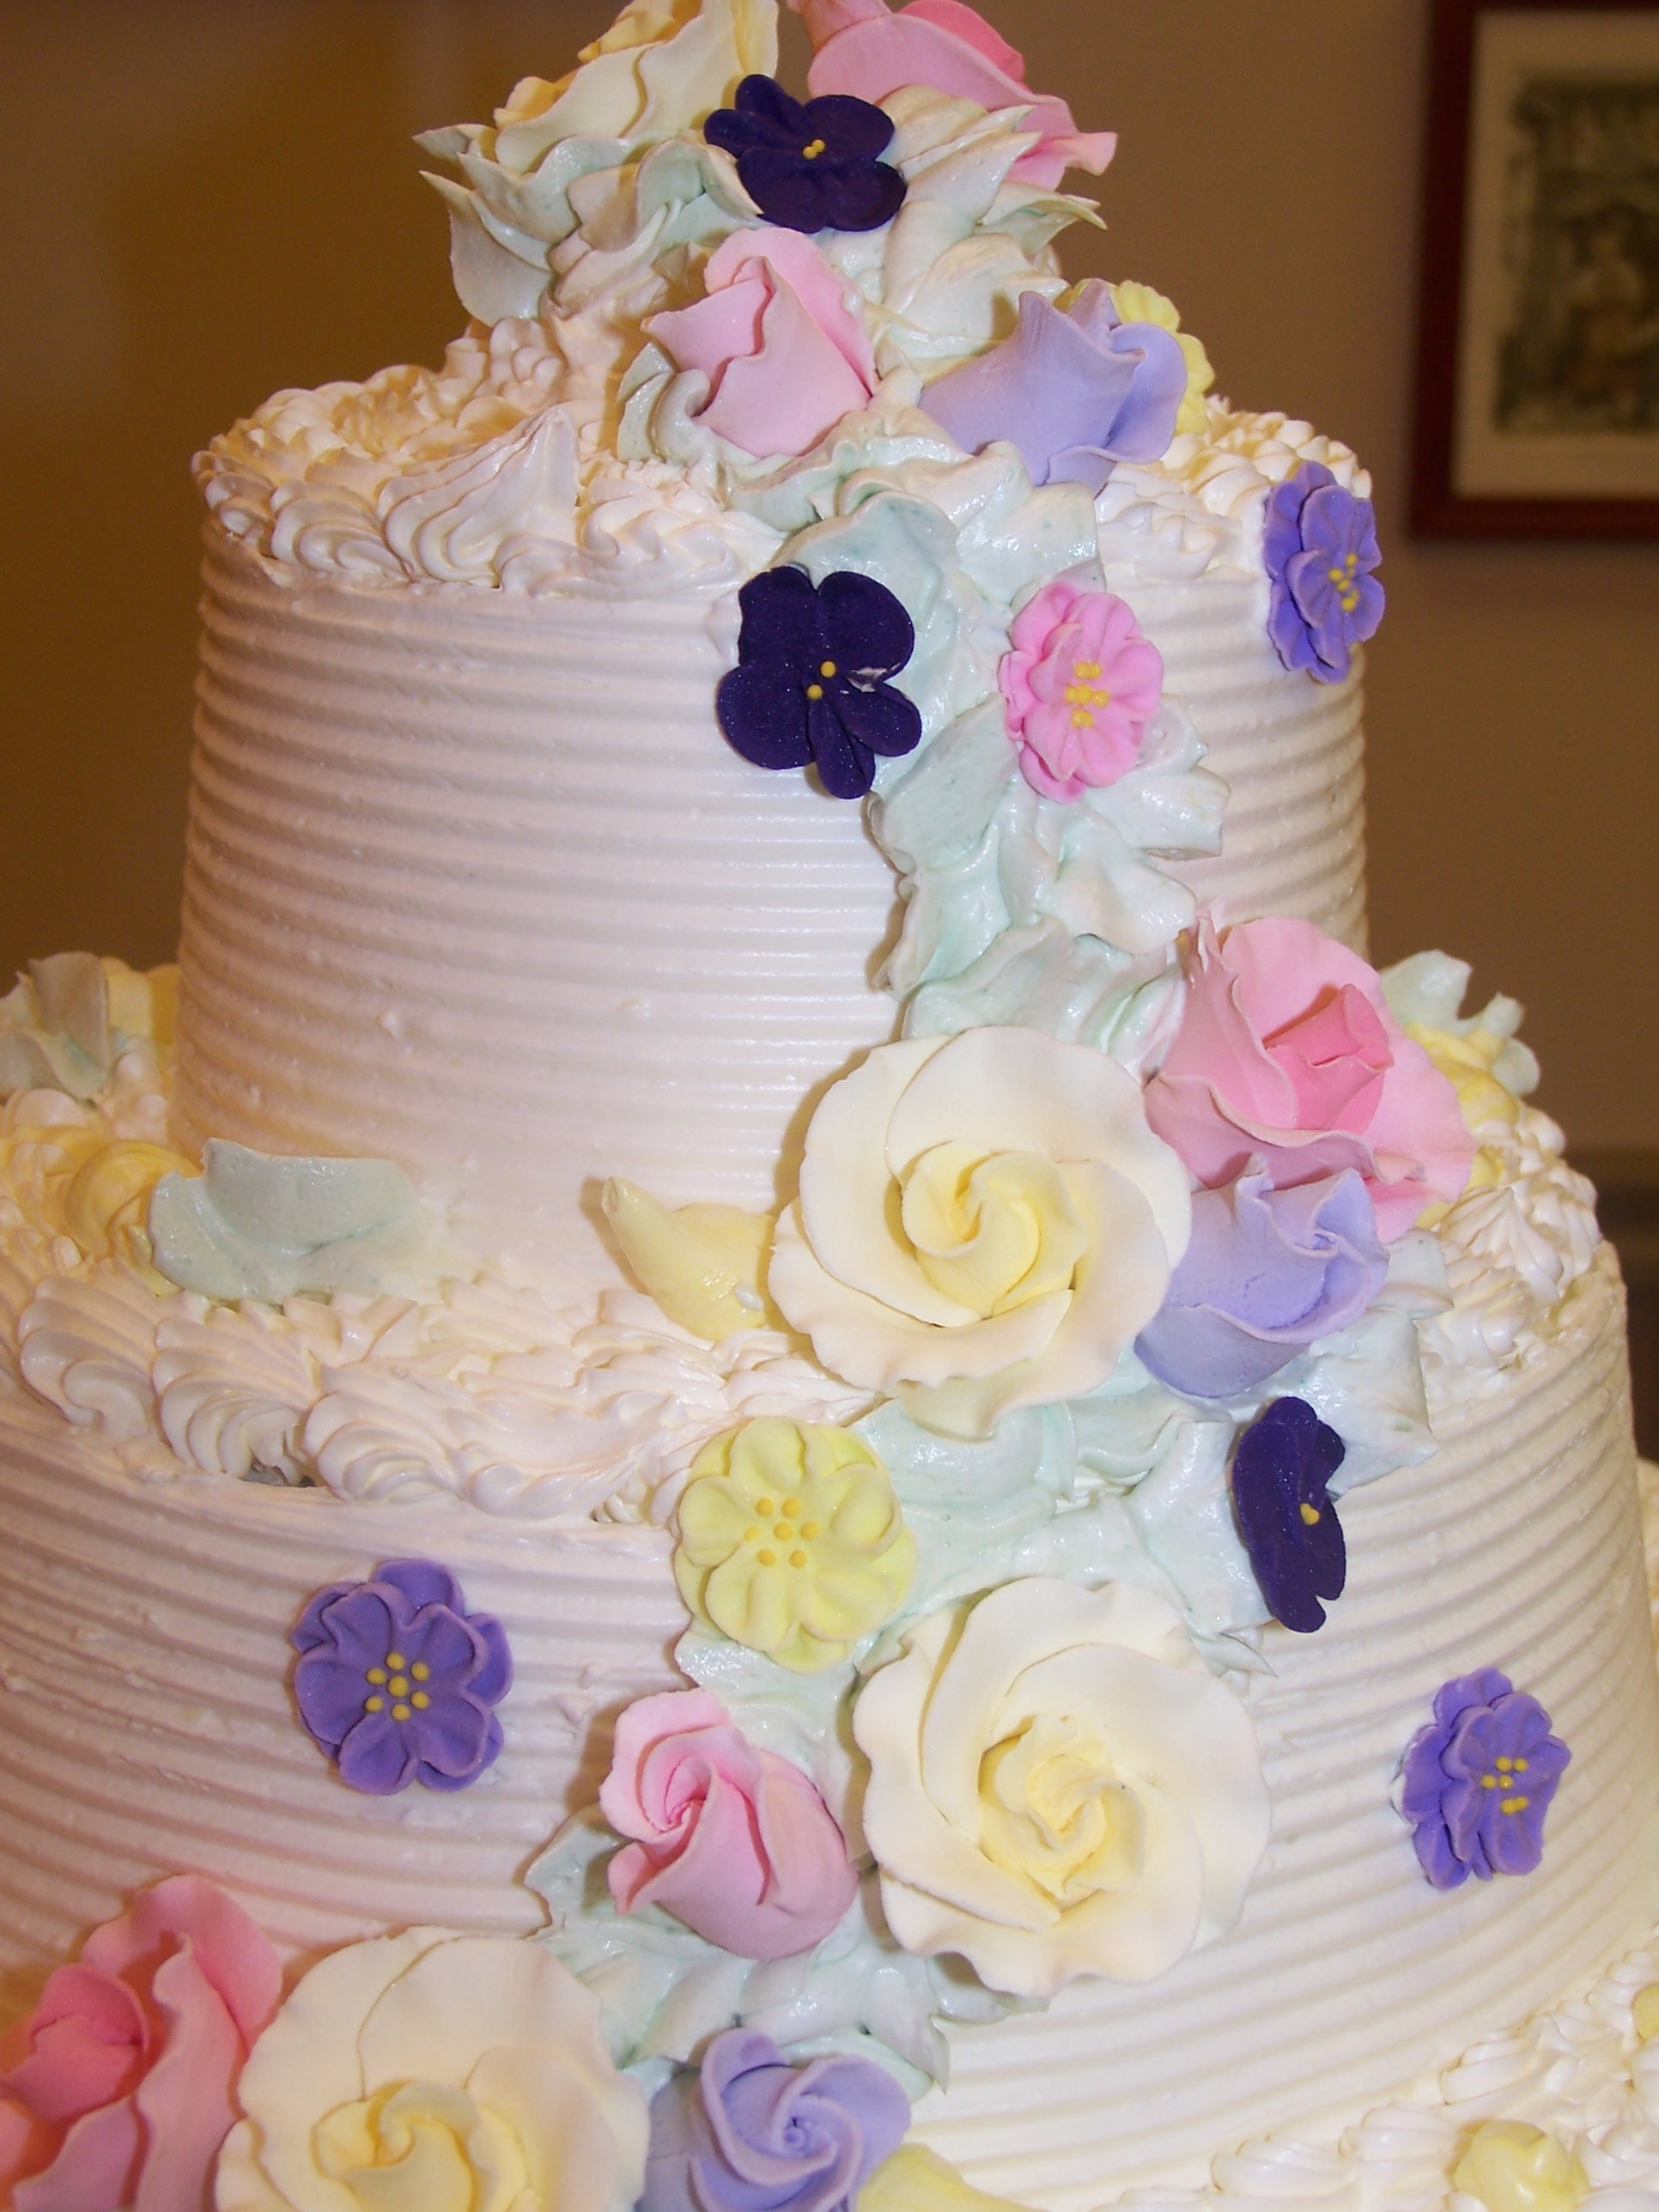 Wilton Wedding Cakes